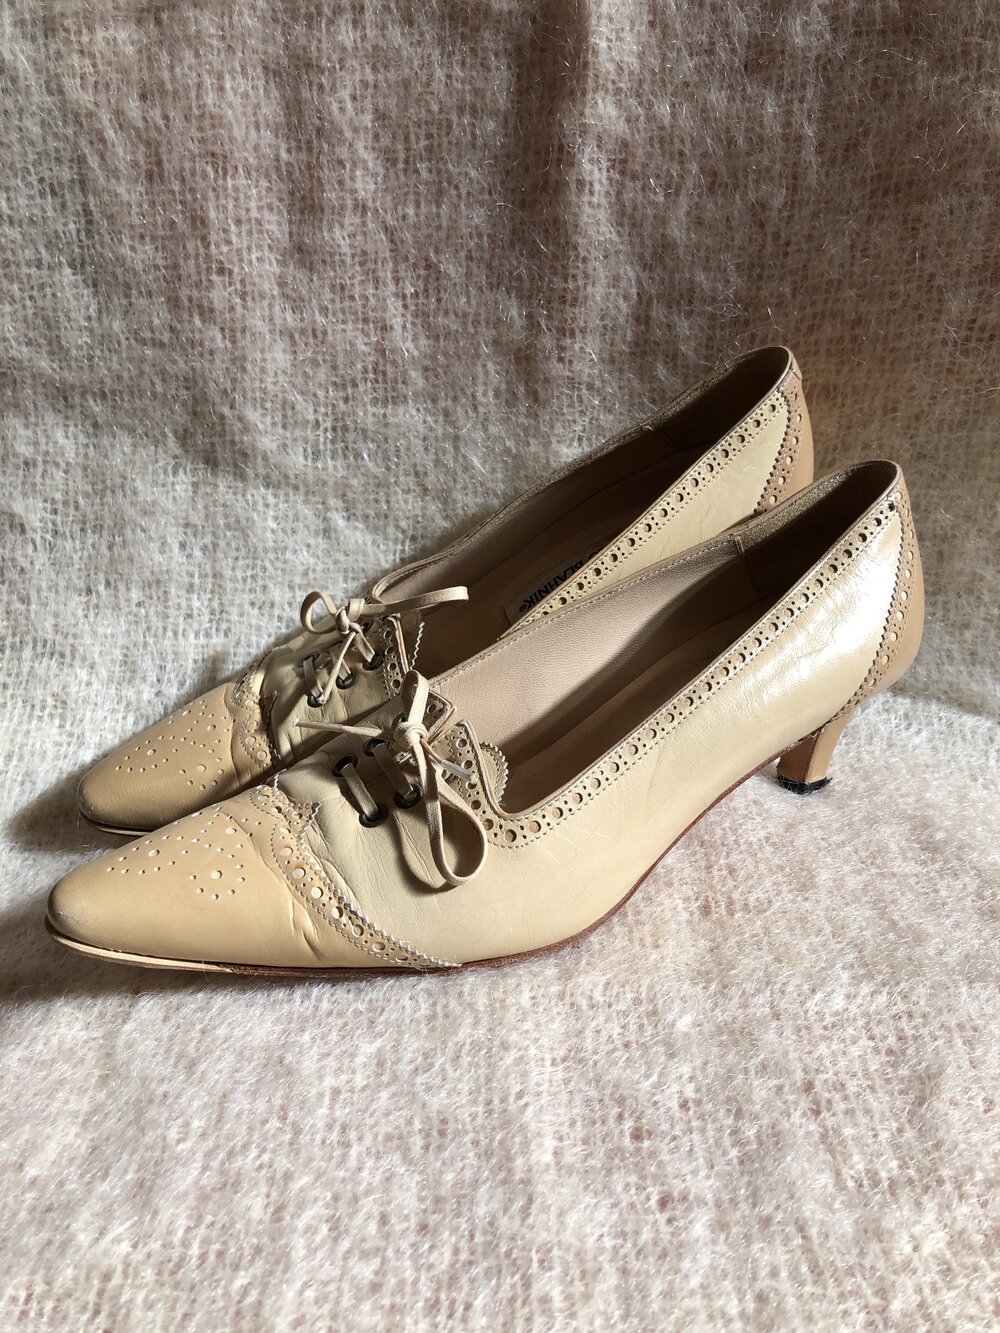 Manolo Blahniks / cream leather pointy toe kitten / Y2k toe brogue low heels — Dusty Rose Vintage